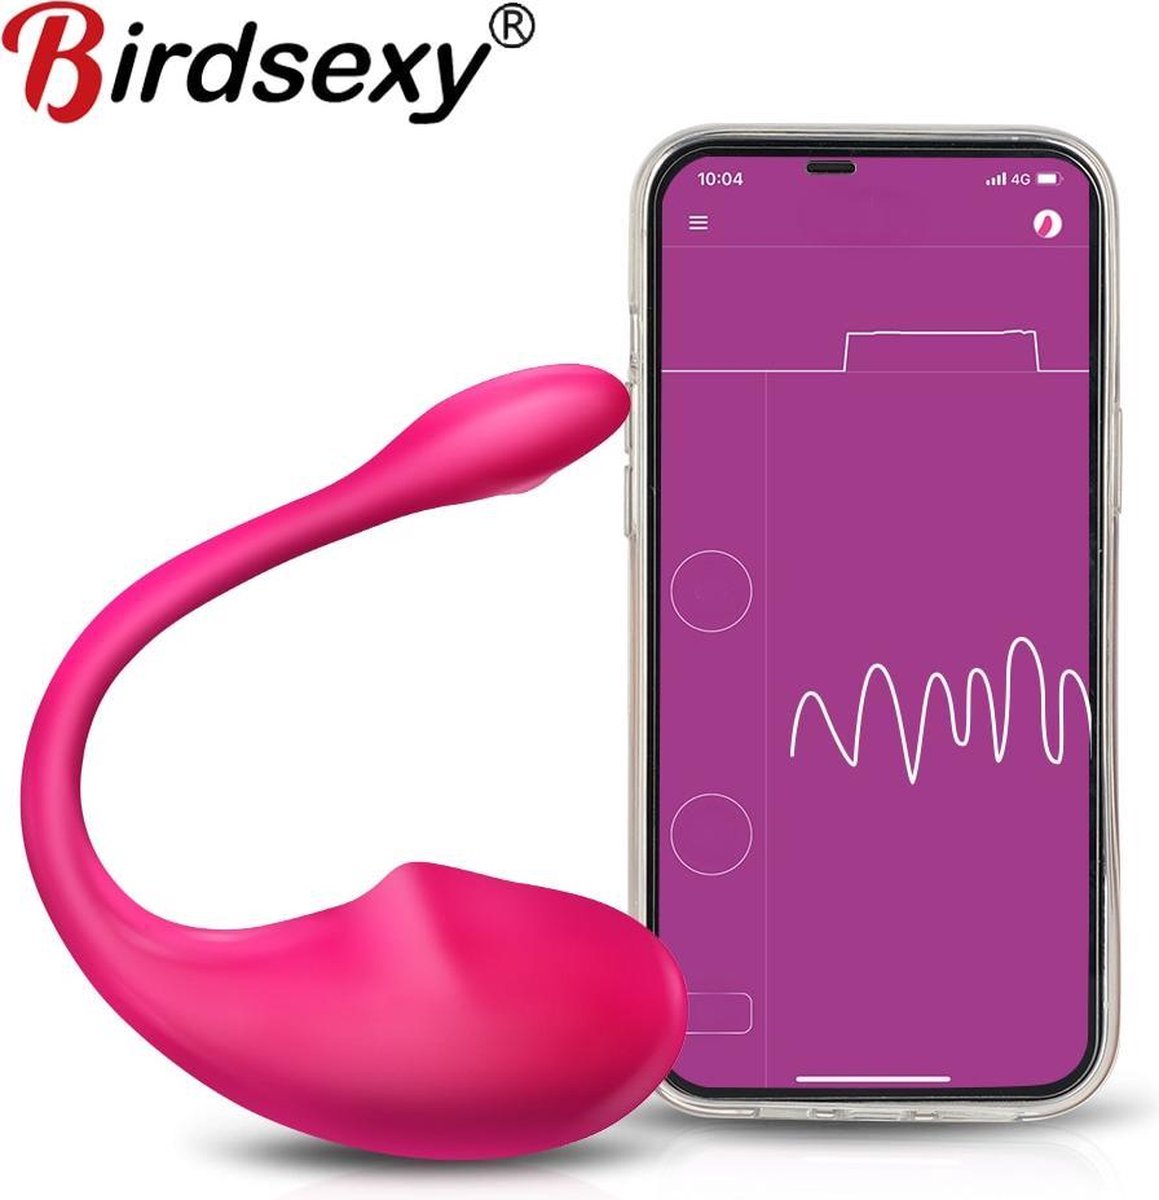 BirdSexy® Dildo Vibrator Voor Vrouwen - Seks Speeltje Voor Koppels - Met App foto foto